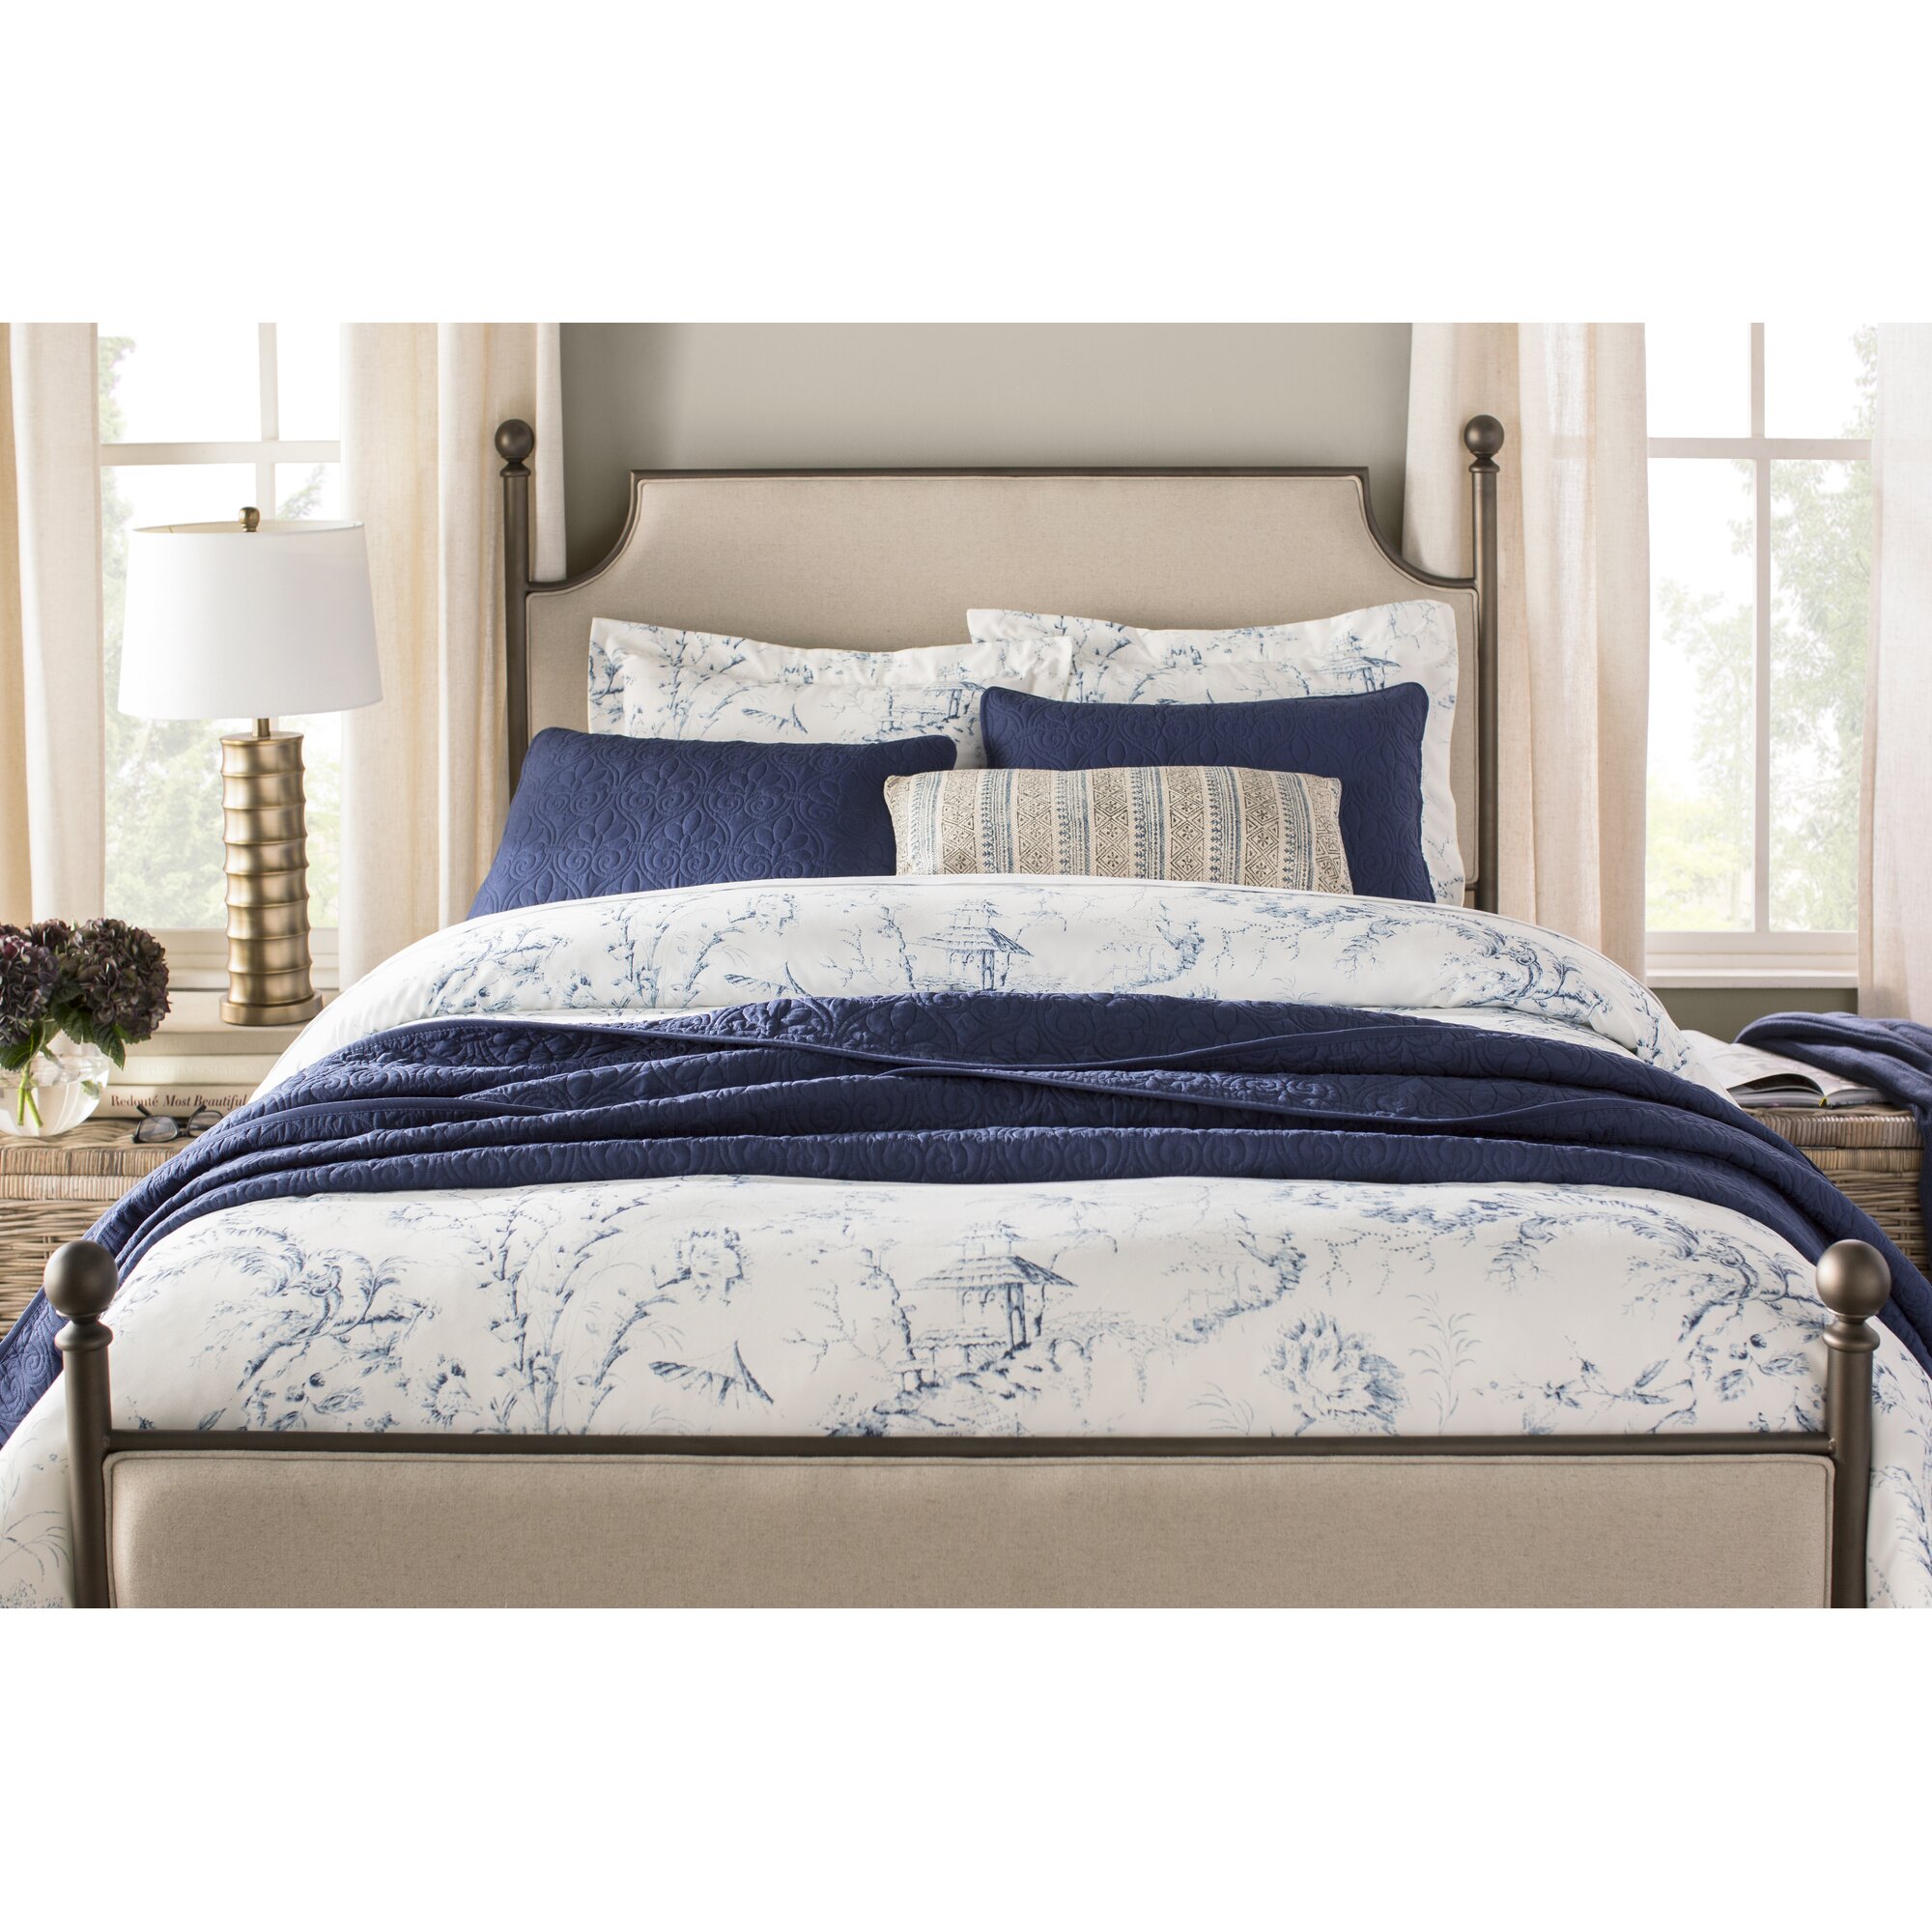 Kingsview Upholstered Standard Bed